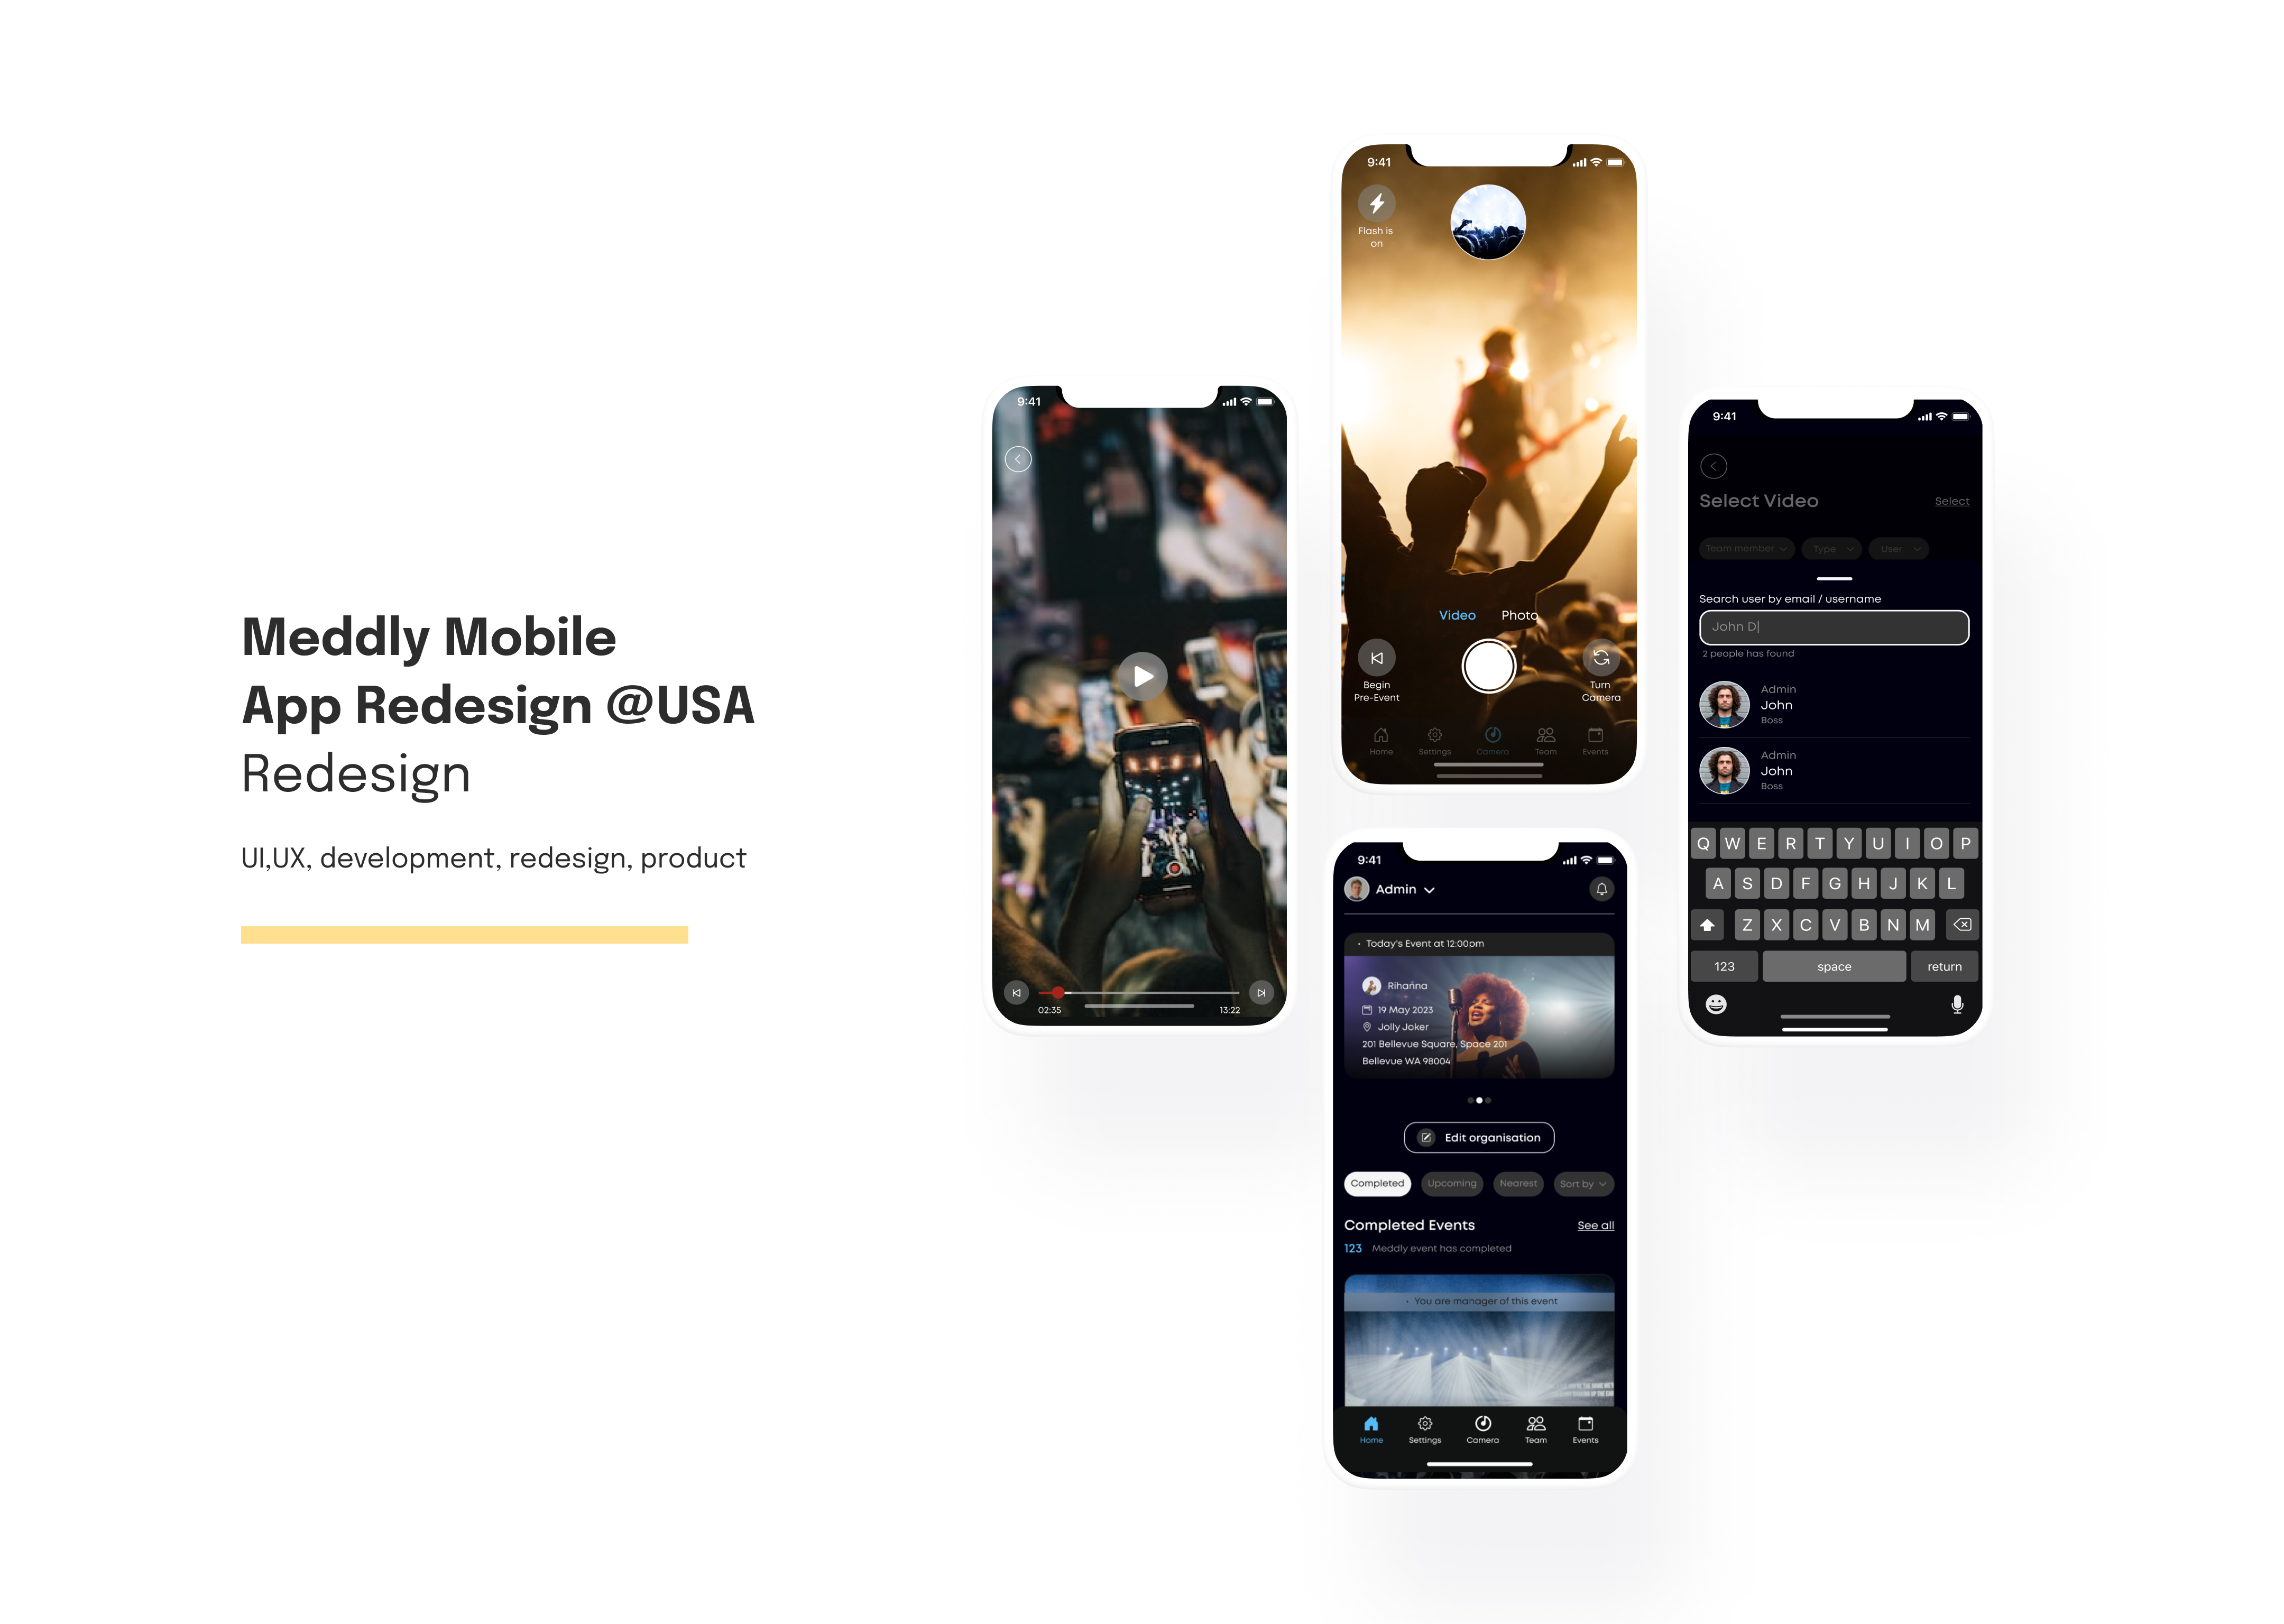 Meddly Mobile App Redesign